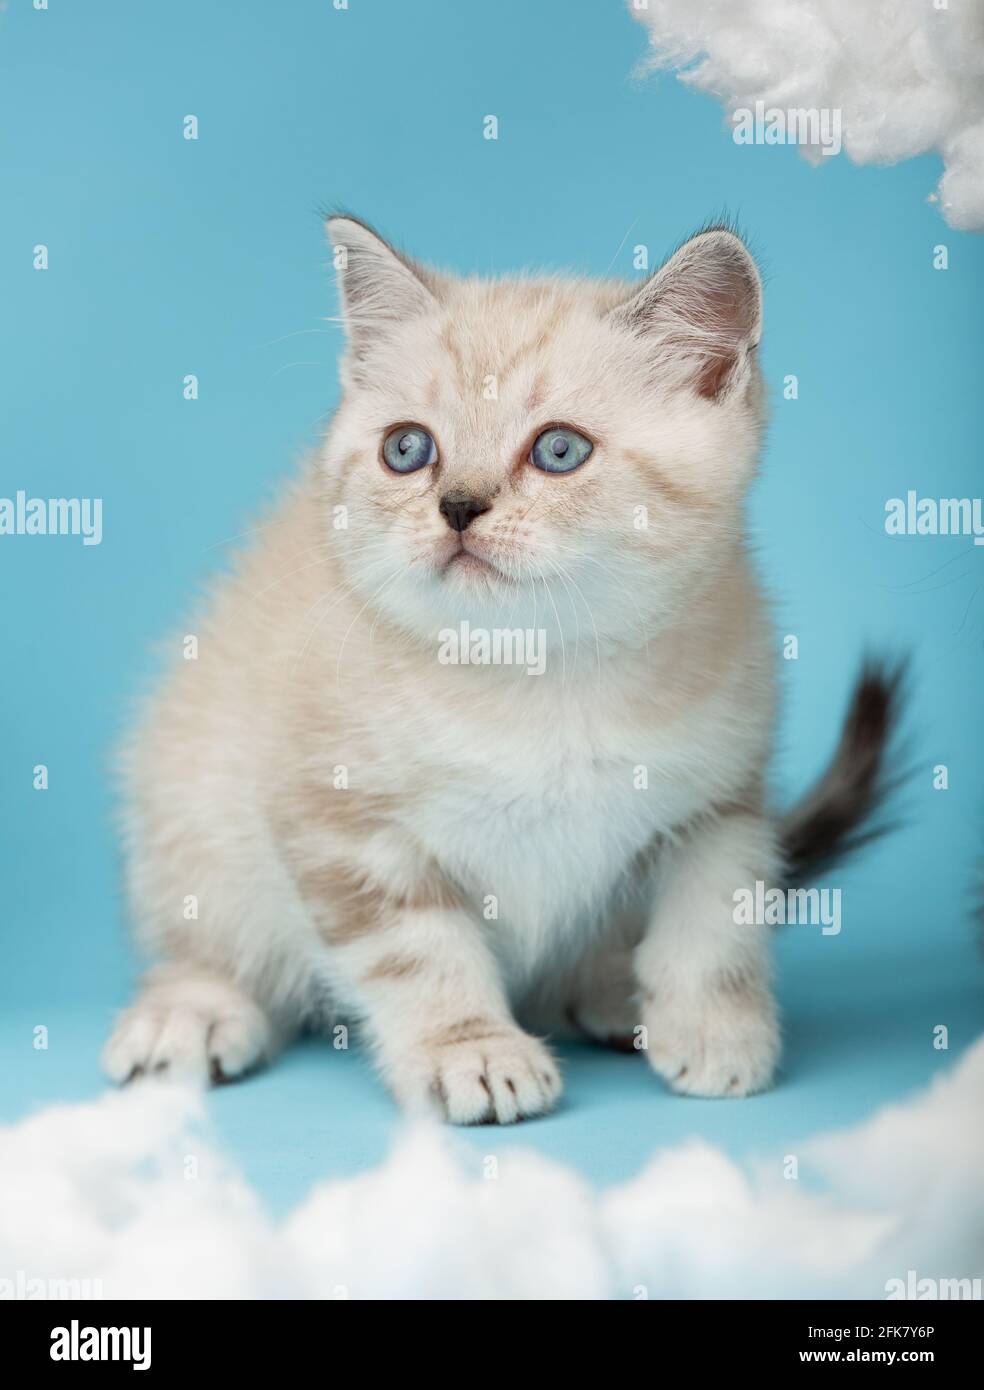 Giocoso gattino scozzese color crema con gli occhi blu si siede su uno sfondo blu e sta per attaccare. Concetto di animali, animali e gatti. Foto Stock